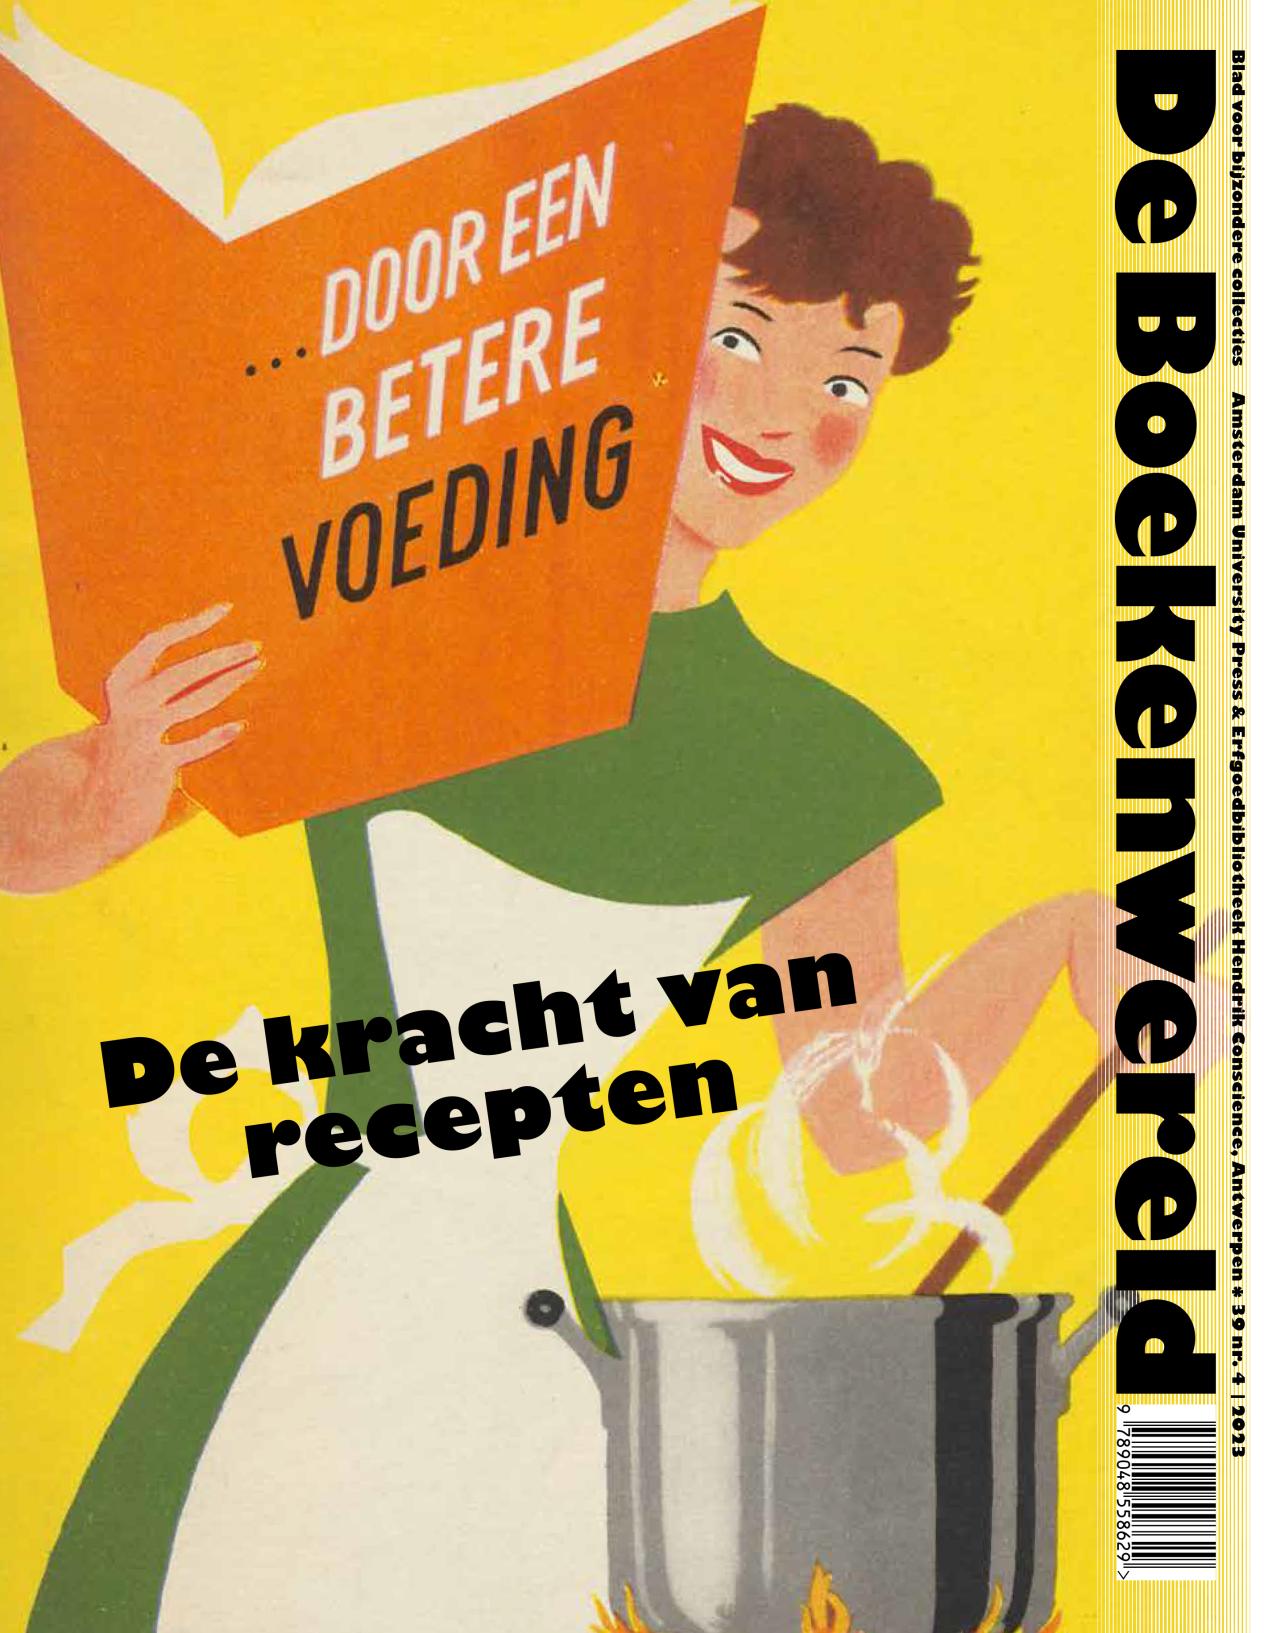 Cover van het tijdschrift De boekenwereld: De kracht van recepten (Vrouw houdt met ene hand kookboek vast en roert met de andere hand in de kookpot)